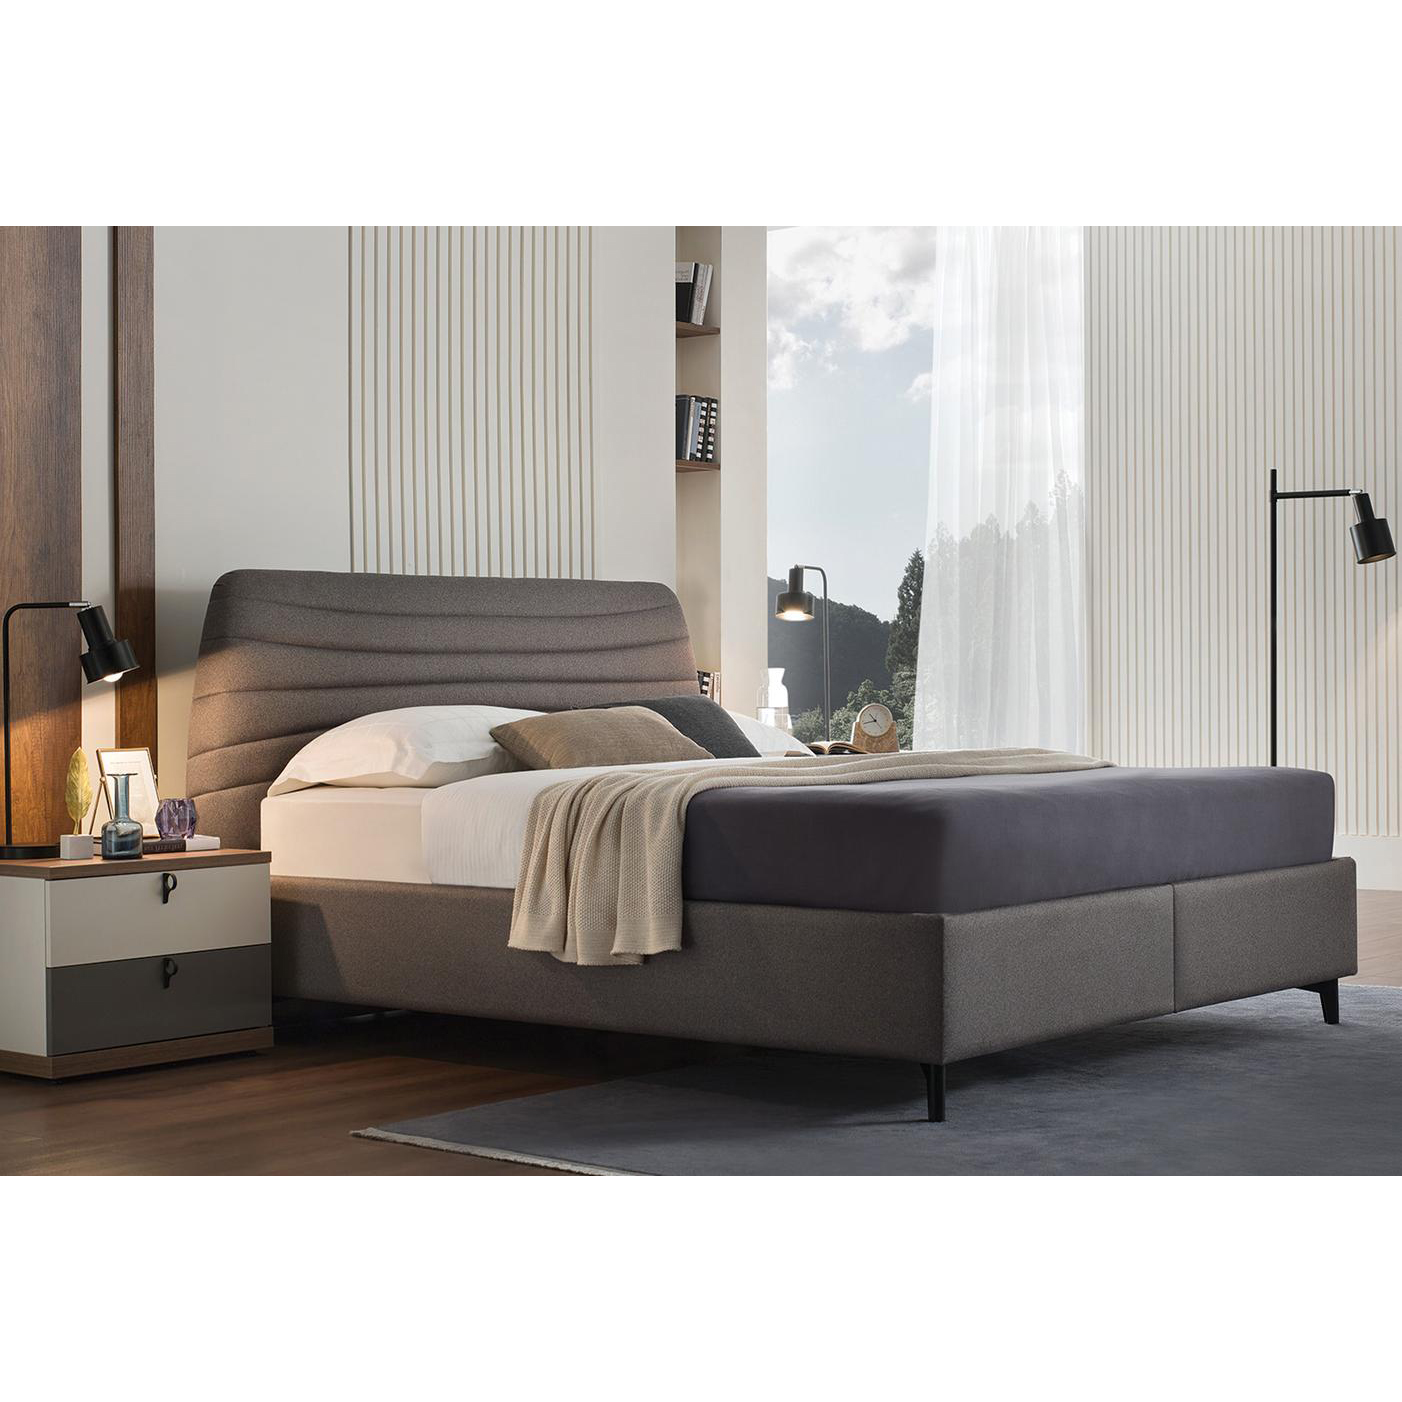 Кровать Enza Home Cordell, двуспальная, с подъемным механизмом, 160х200 см